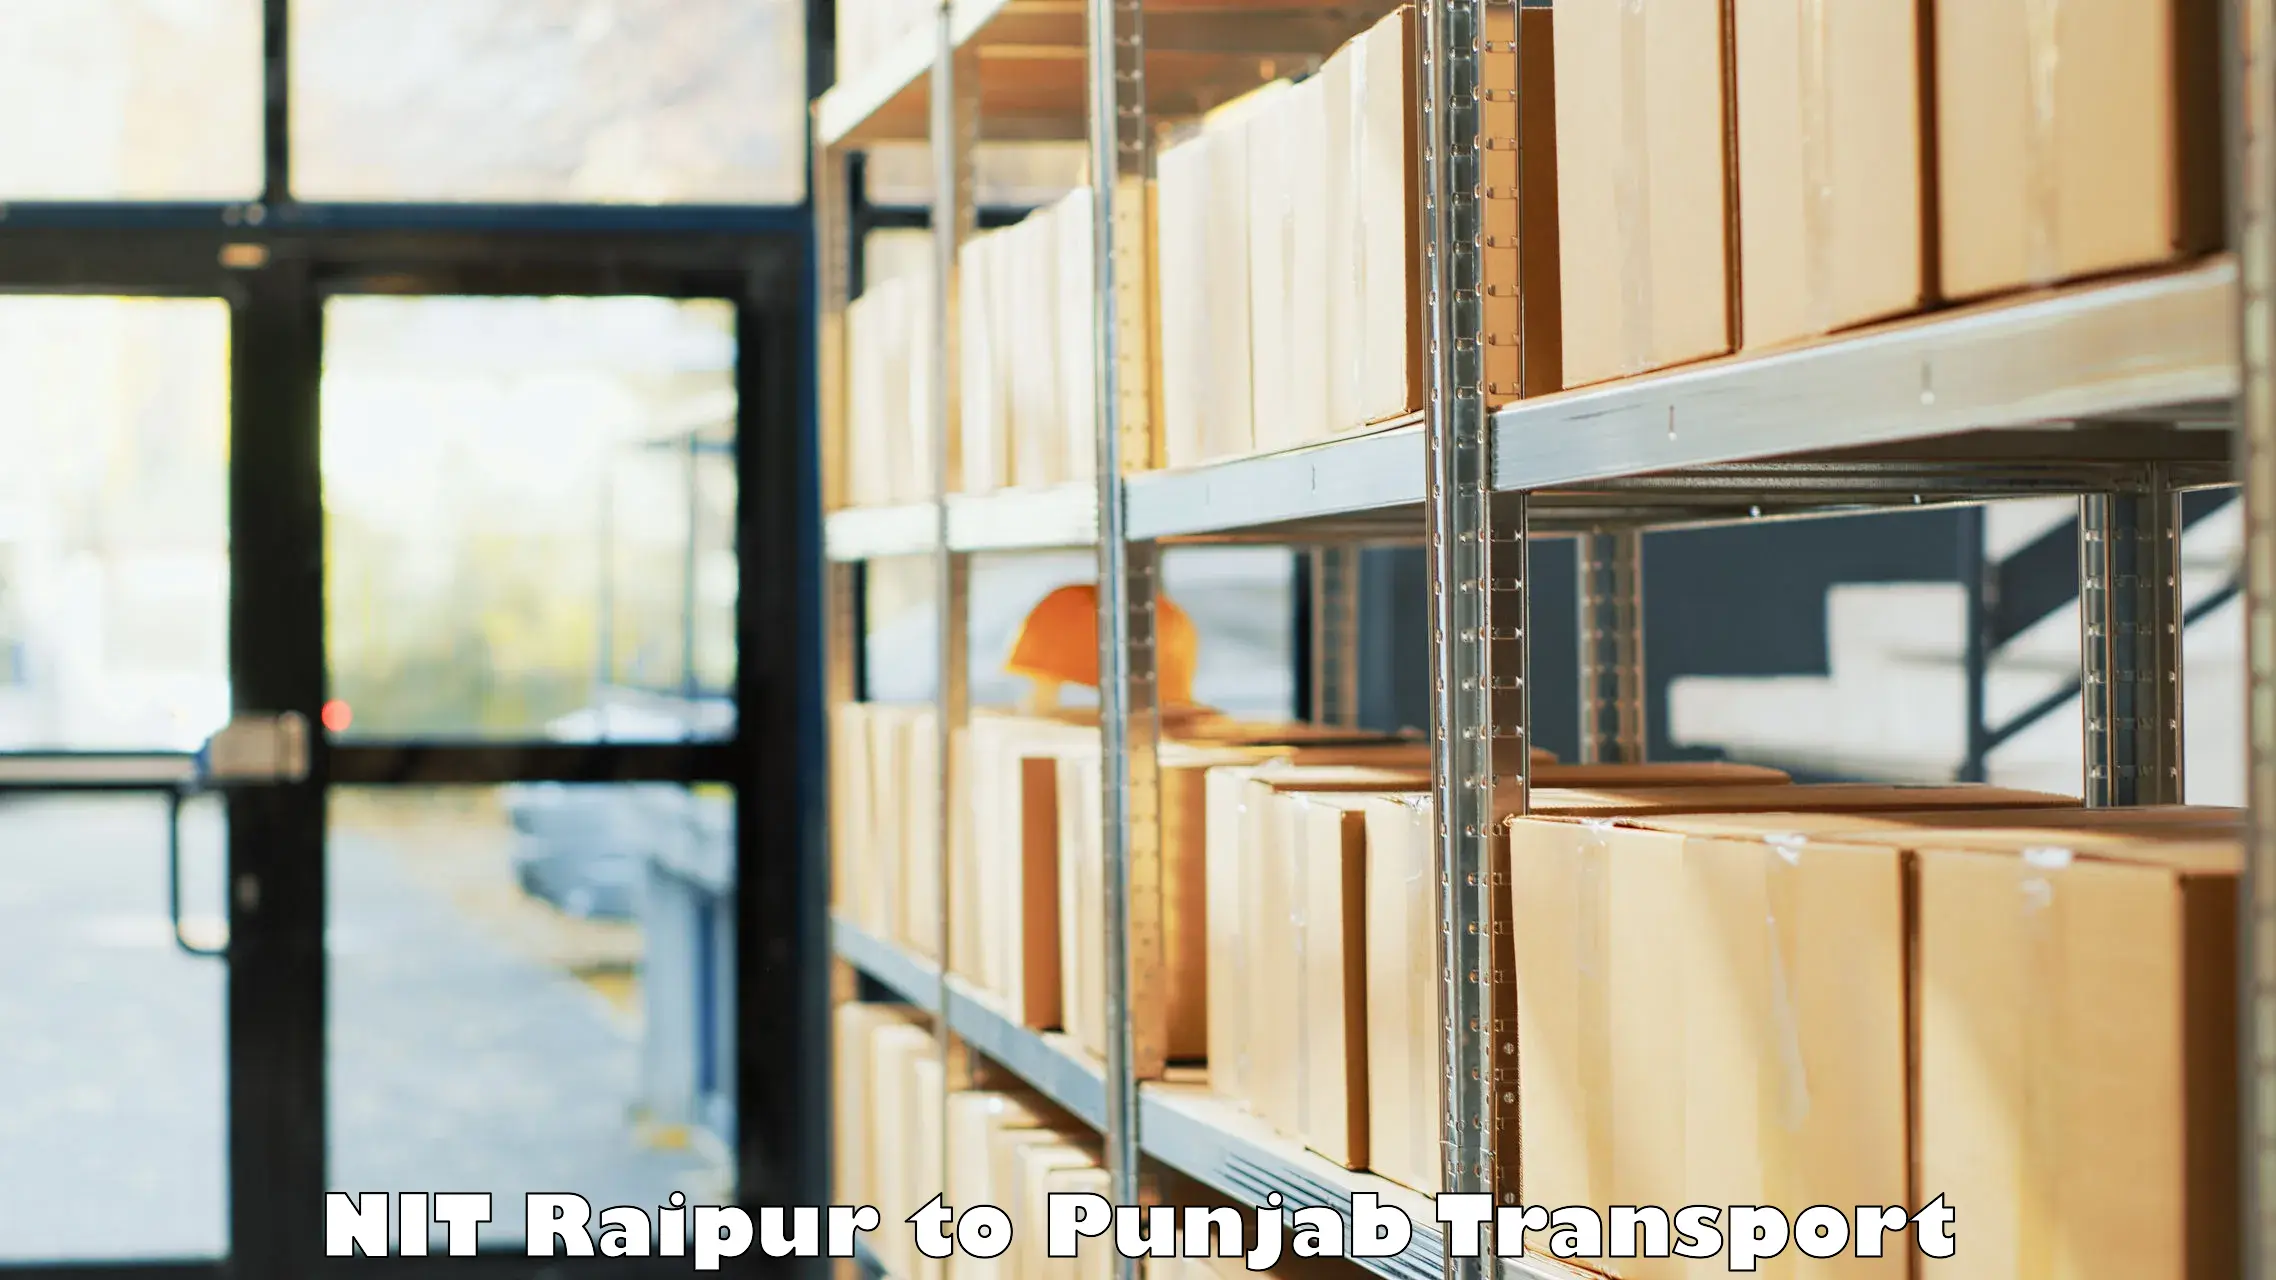 Two wheeler parcel service NIT Raipur to Talwandi Sabo